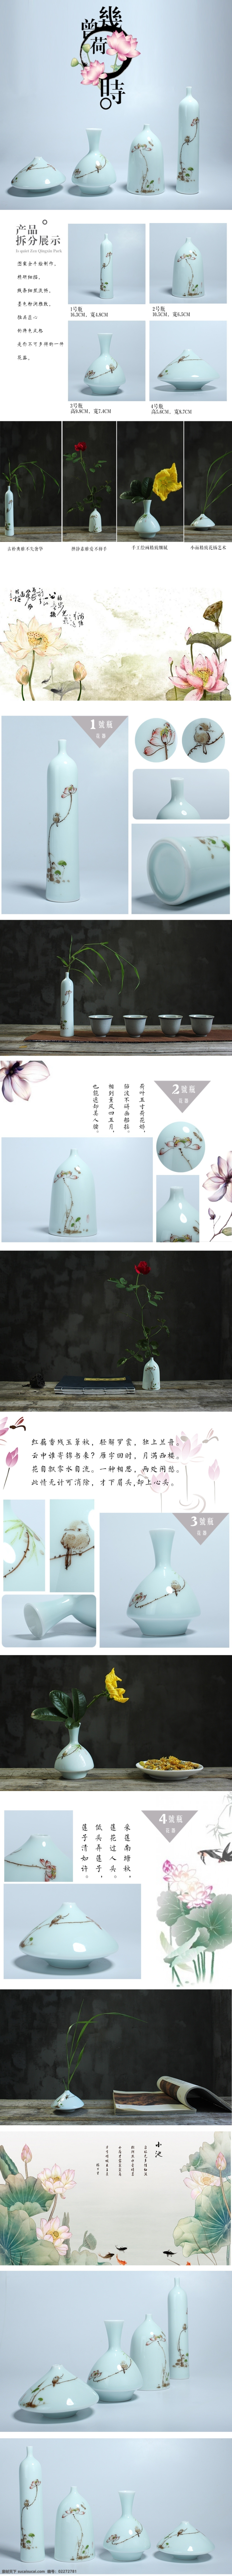 荷花 陶瓷 花器 花瓶 手绘 详情 复古 白色